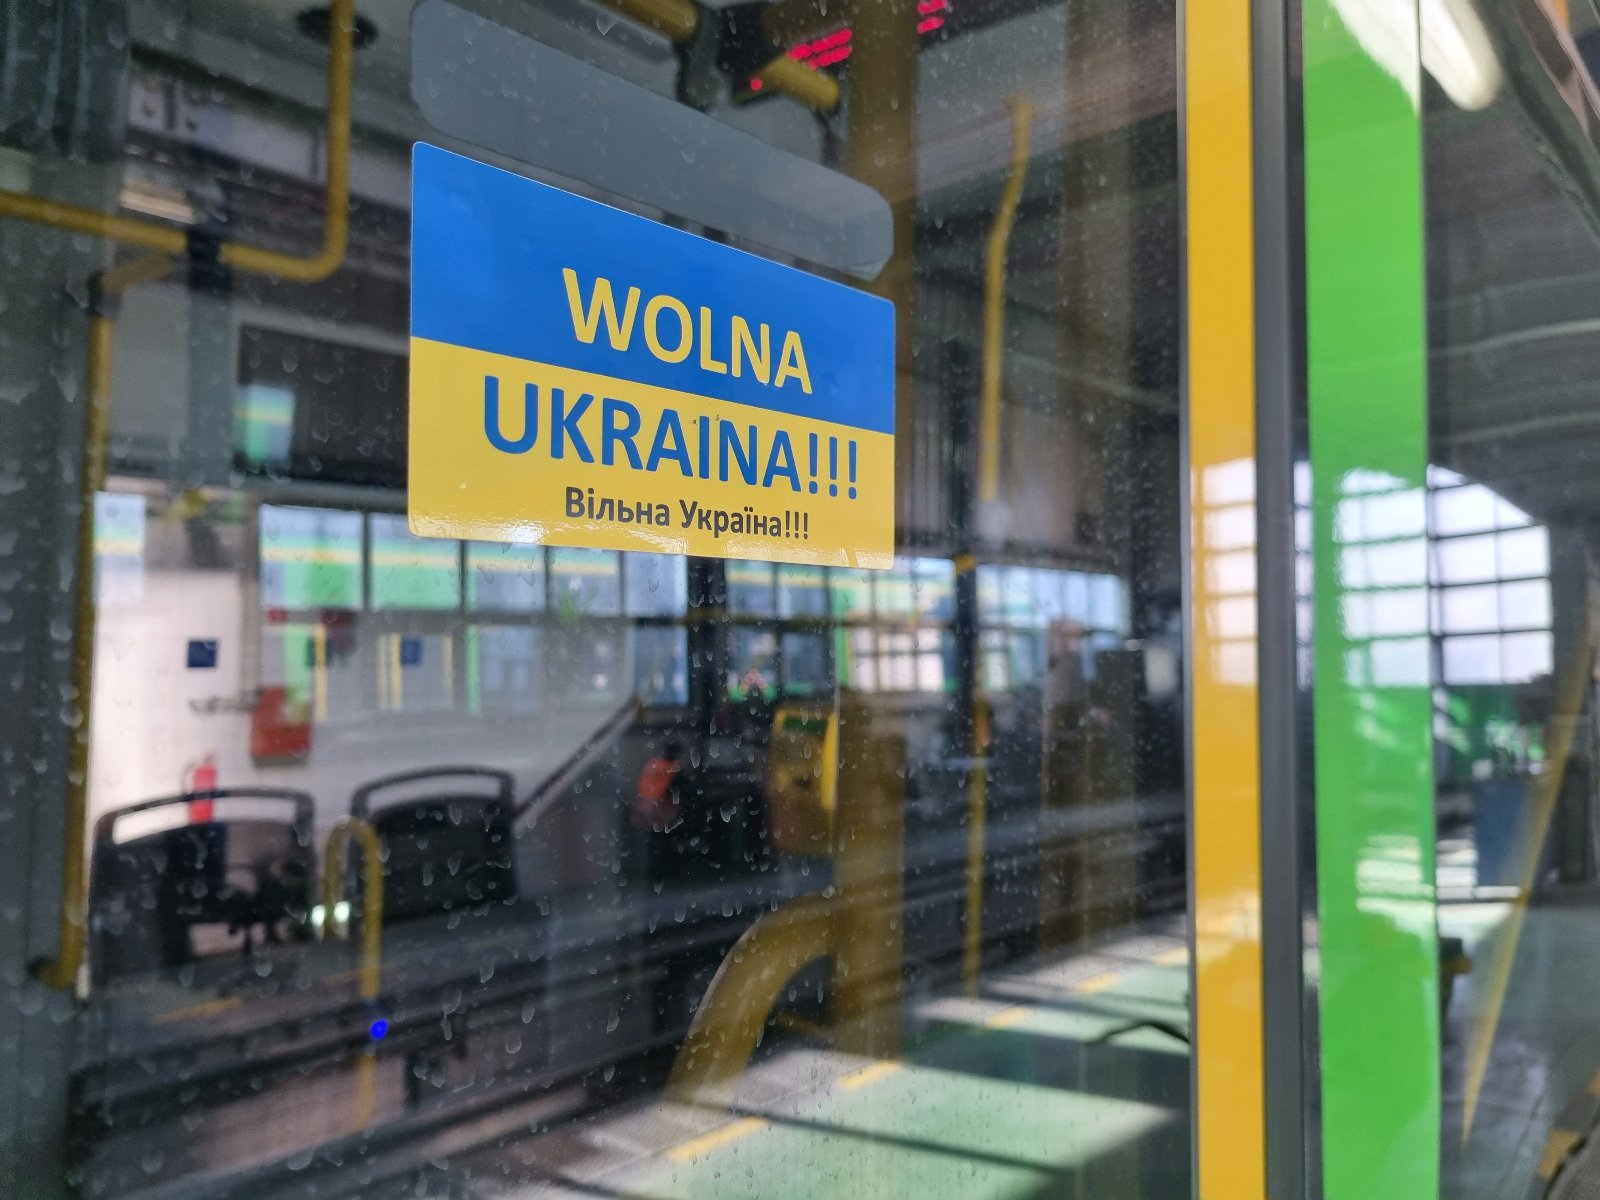 Niebiesko-żółta naklejka z napisem Wolna Ukraina po polsku i ukraińsku naklejona na drzwiach tramwaju - grafika artykułu